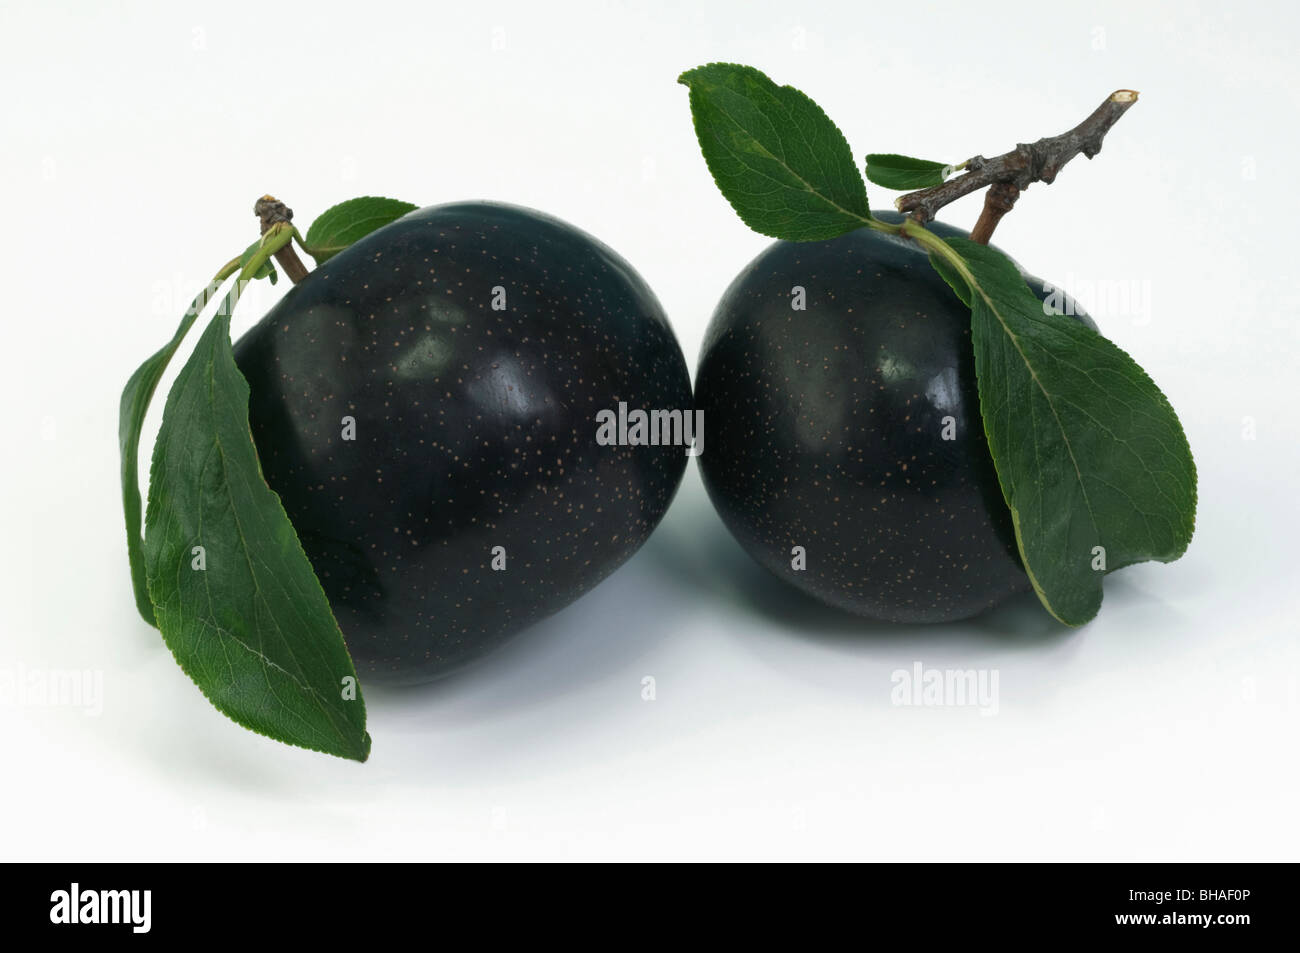 Prune chinois, japonais prunier (Prunus salicina), variété : Angeleno, deux fruits mûrs avec des feuilles, studio photo. Banque D'Images